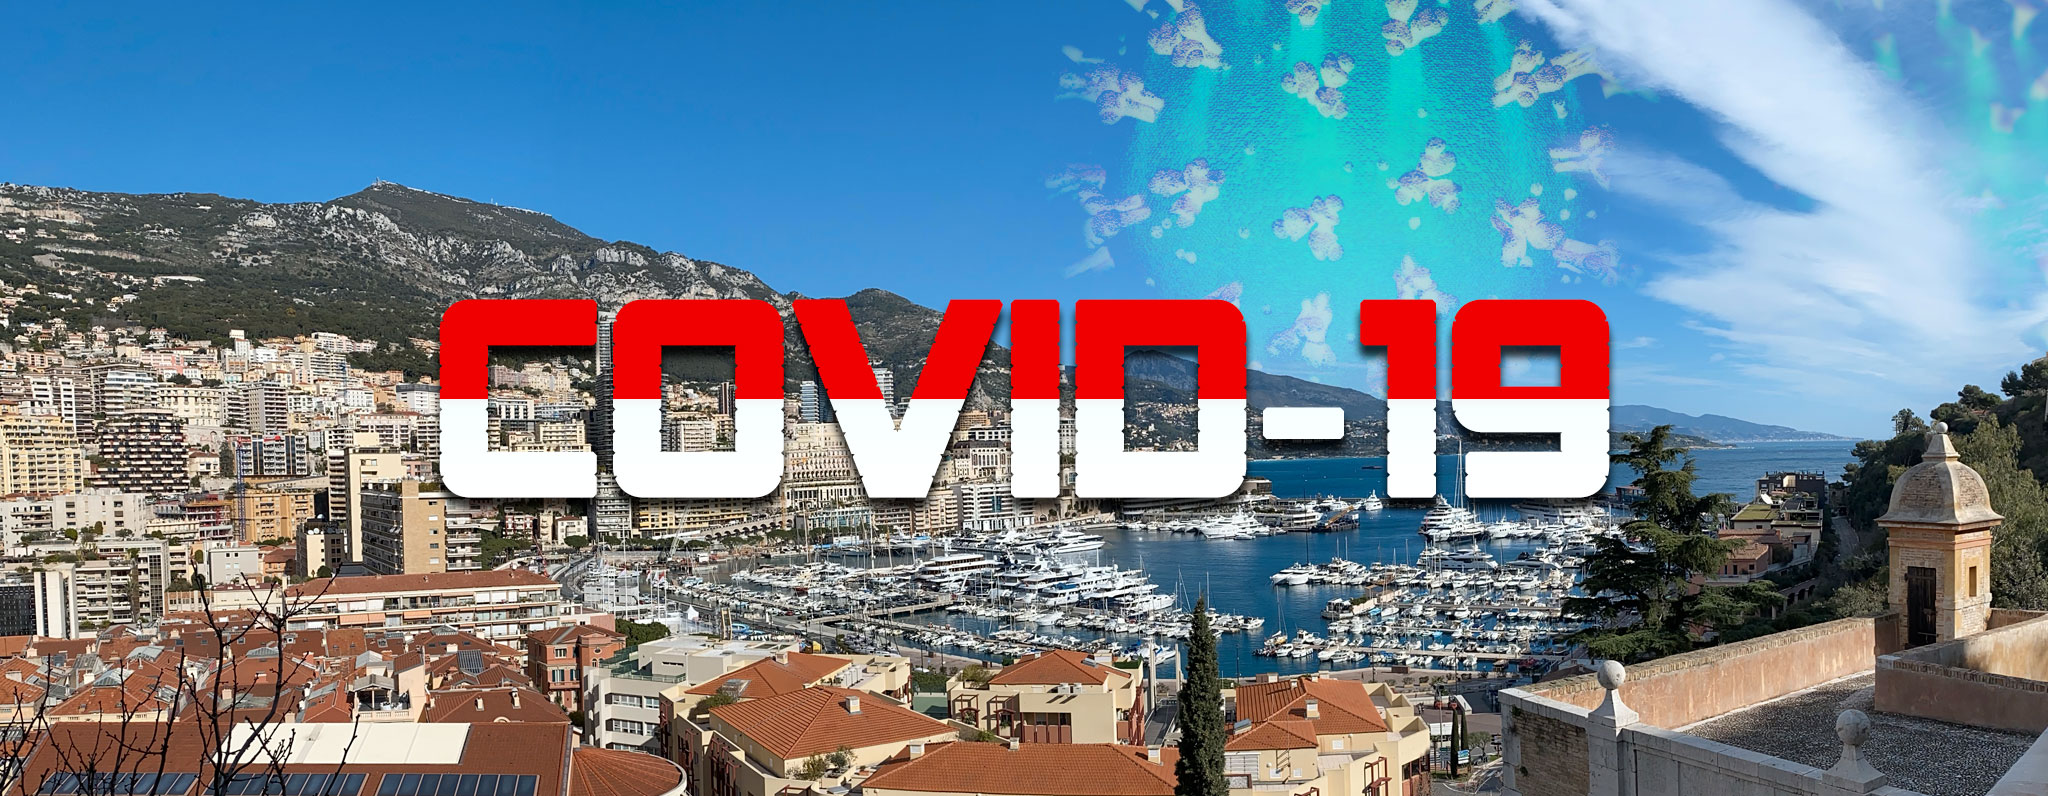 COVID-19 à Monaco : mesures, consignes, indemnisation